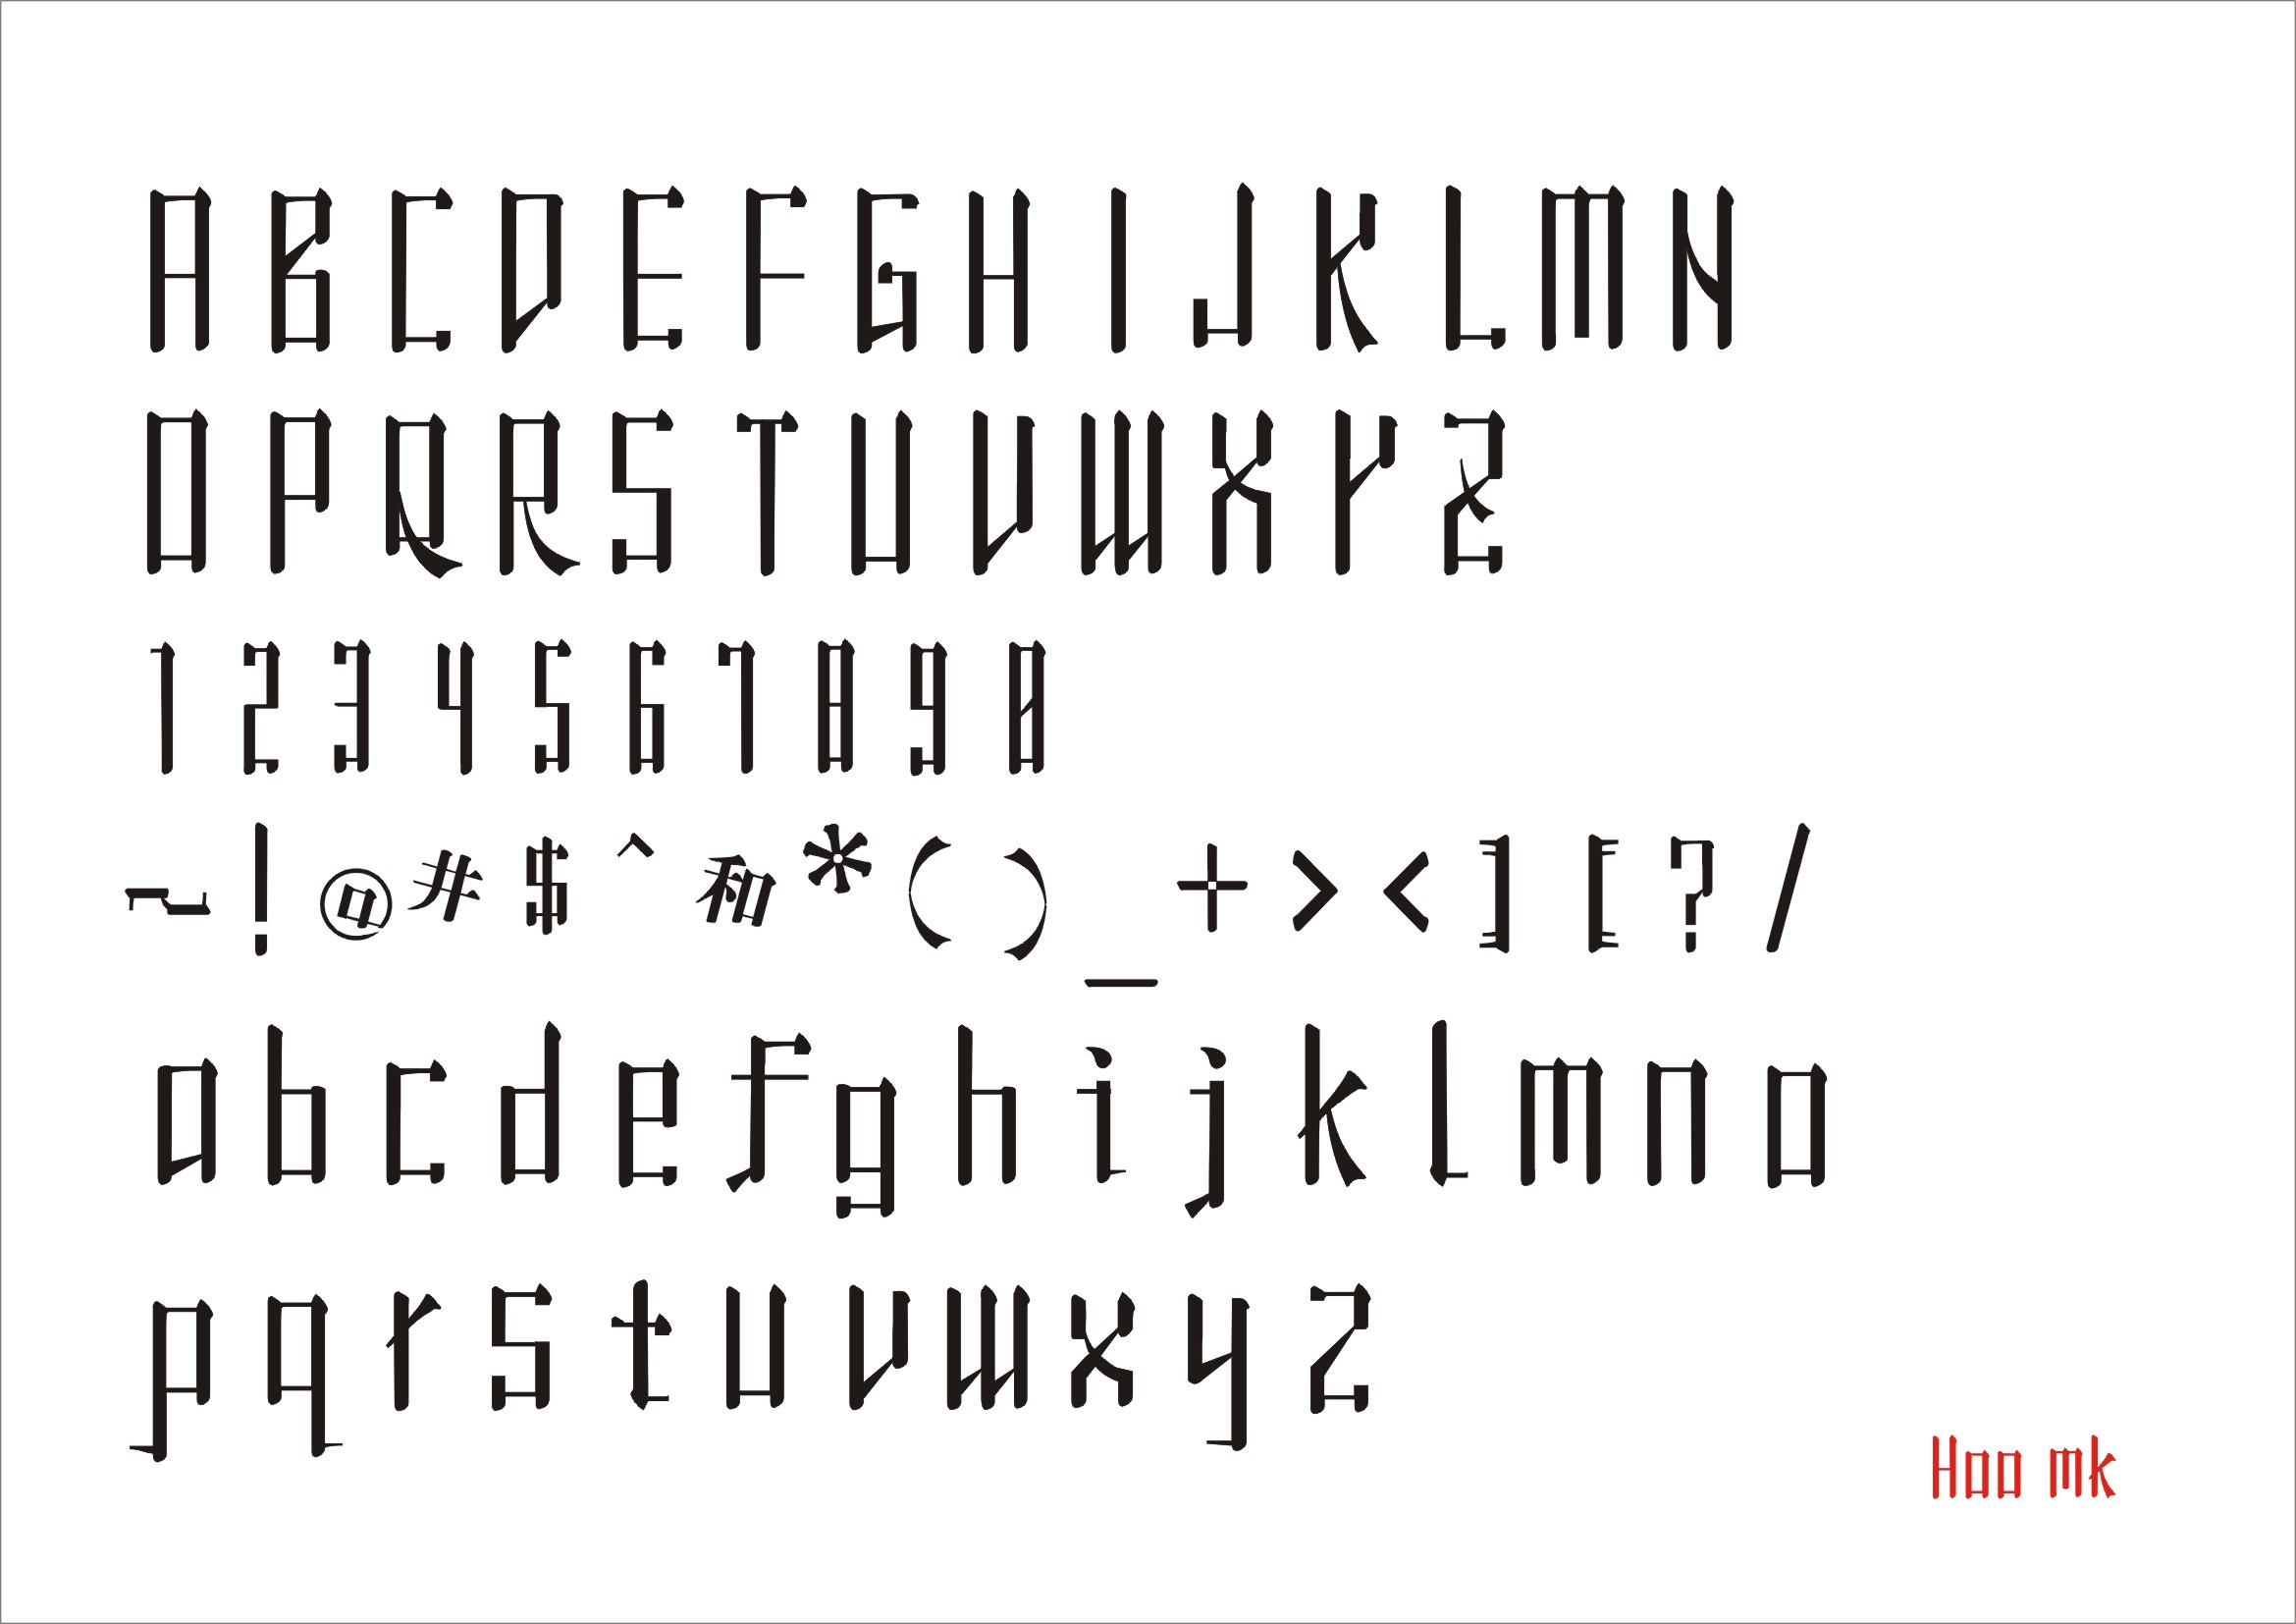 2006年设计的字体仿宋体英文 ttf 字体文件可下载